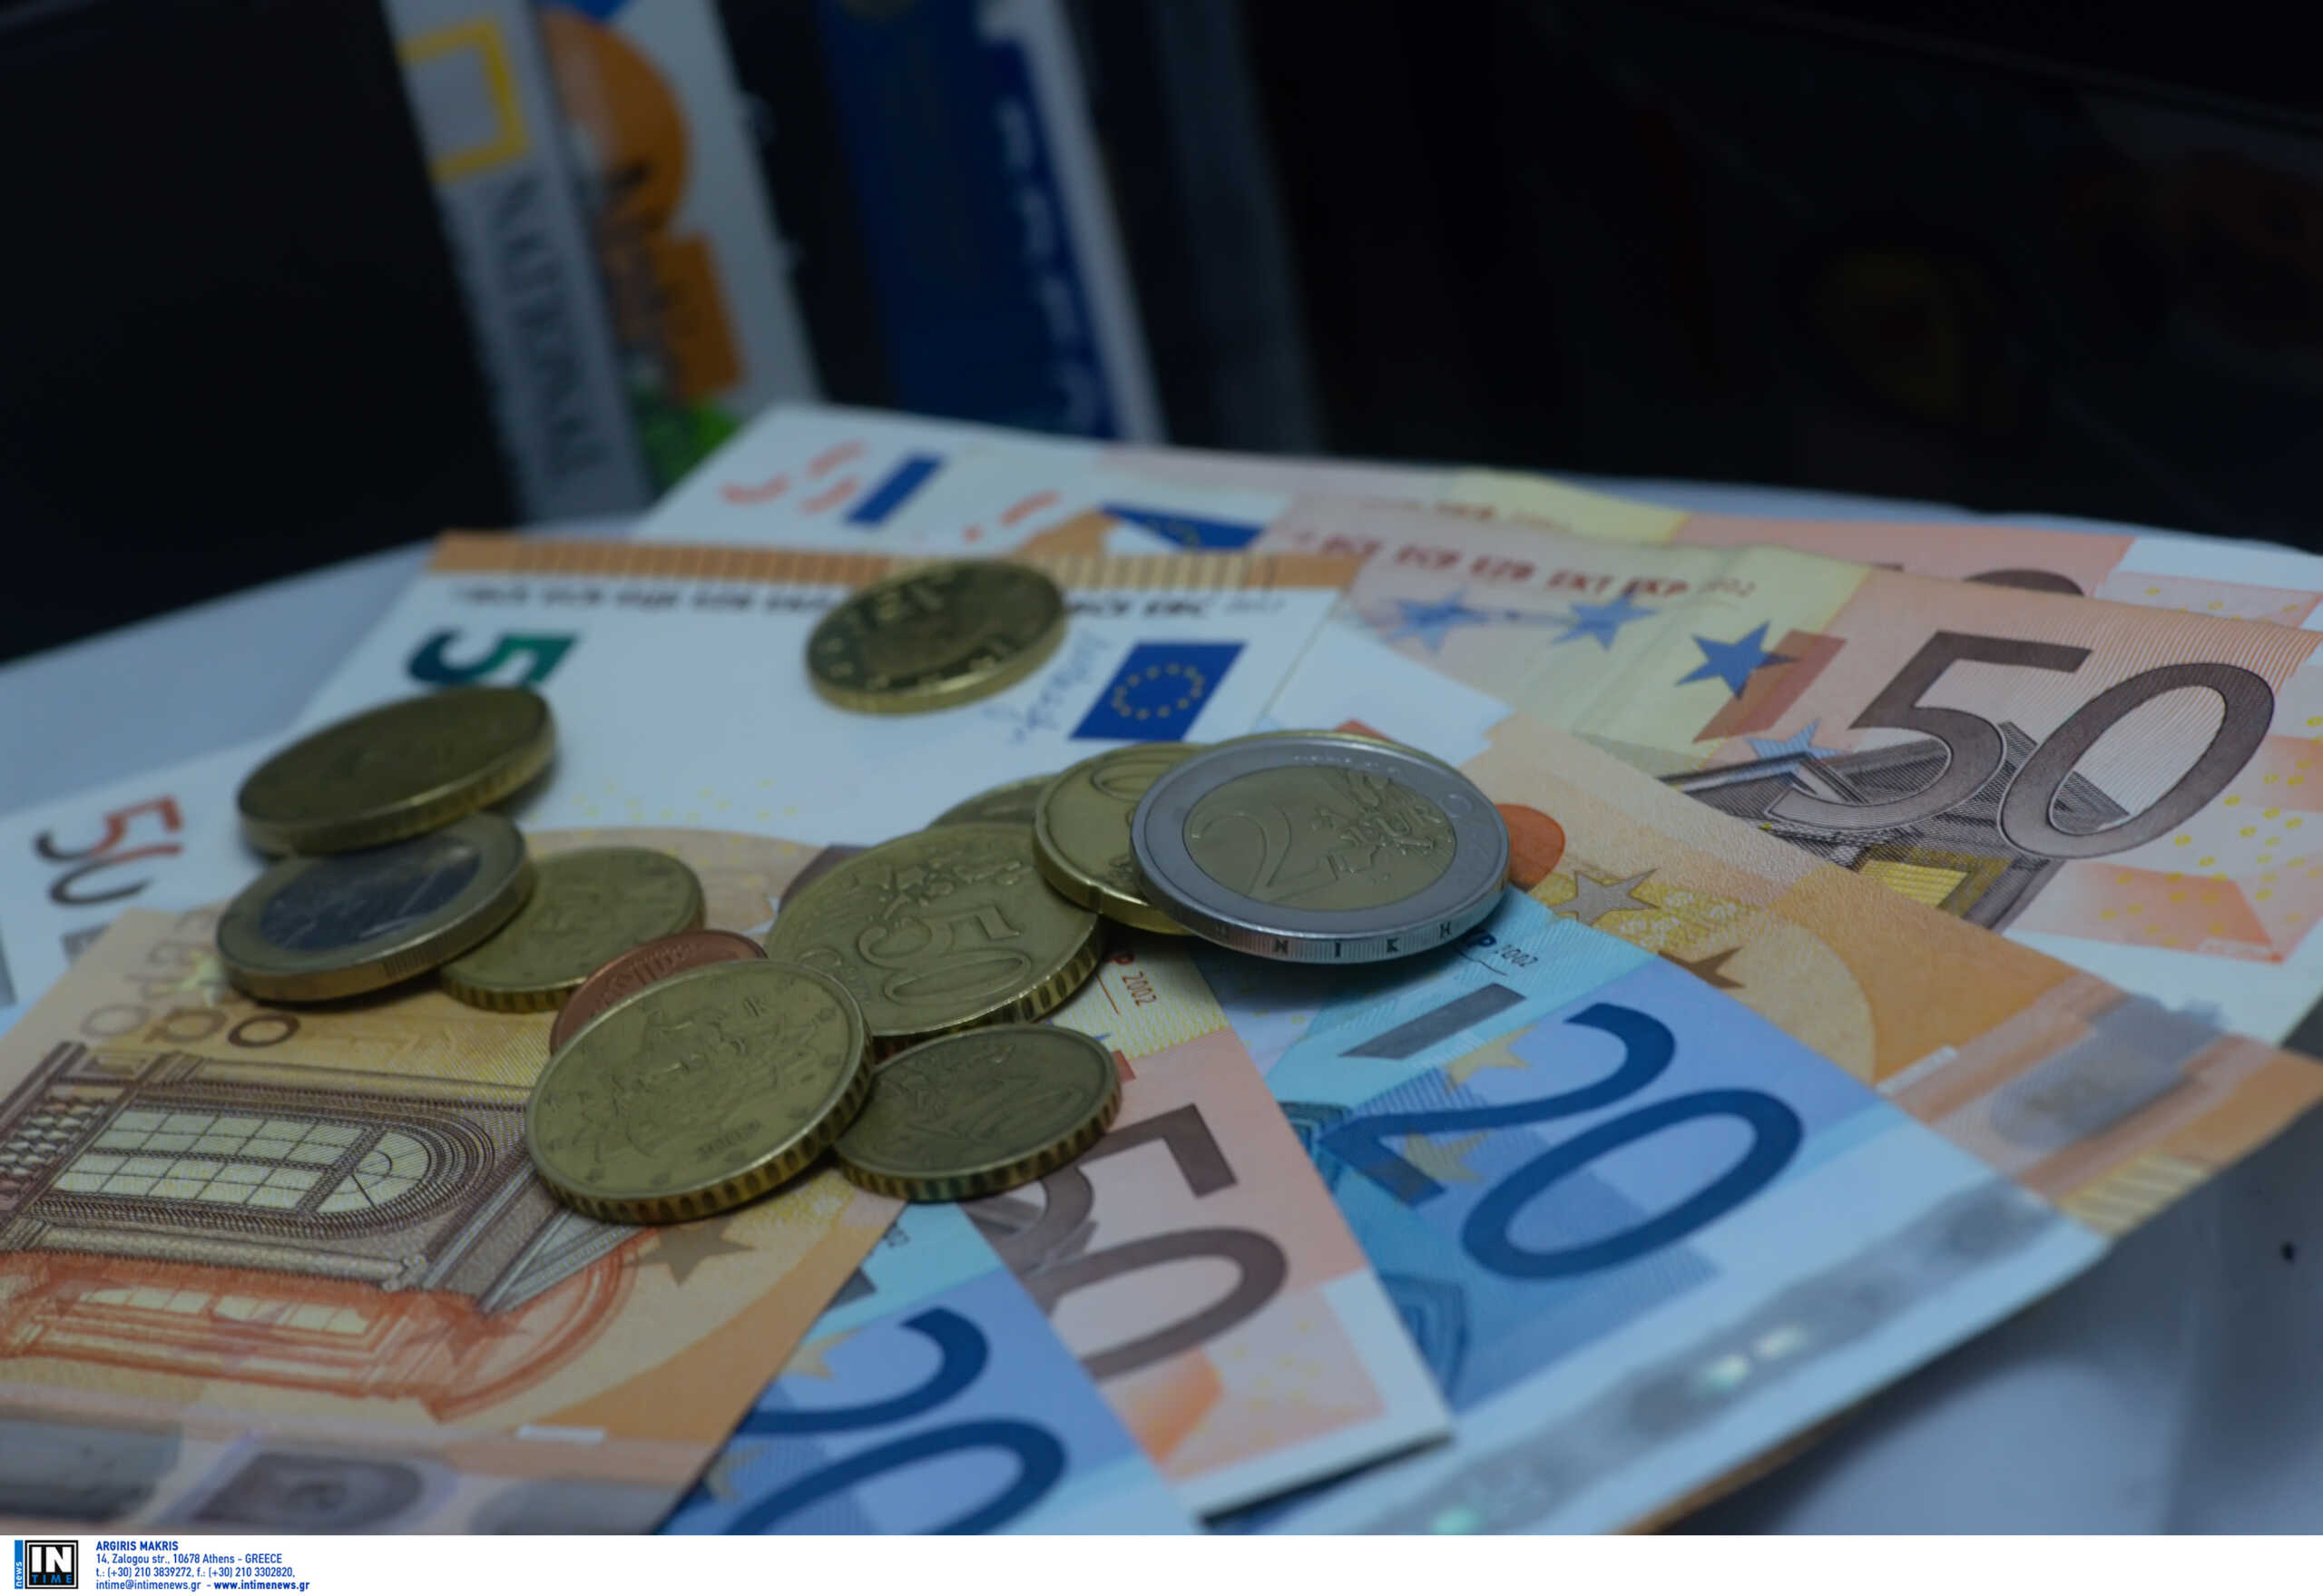 ΑΑΔΕ: Σούπερ φορολοταρία θα δώσει από 100.000 ευρώ σε 12 τυχερούς – Ποιοι θα συμμετέχουν και πώς